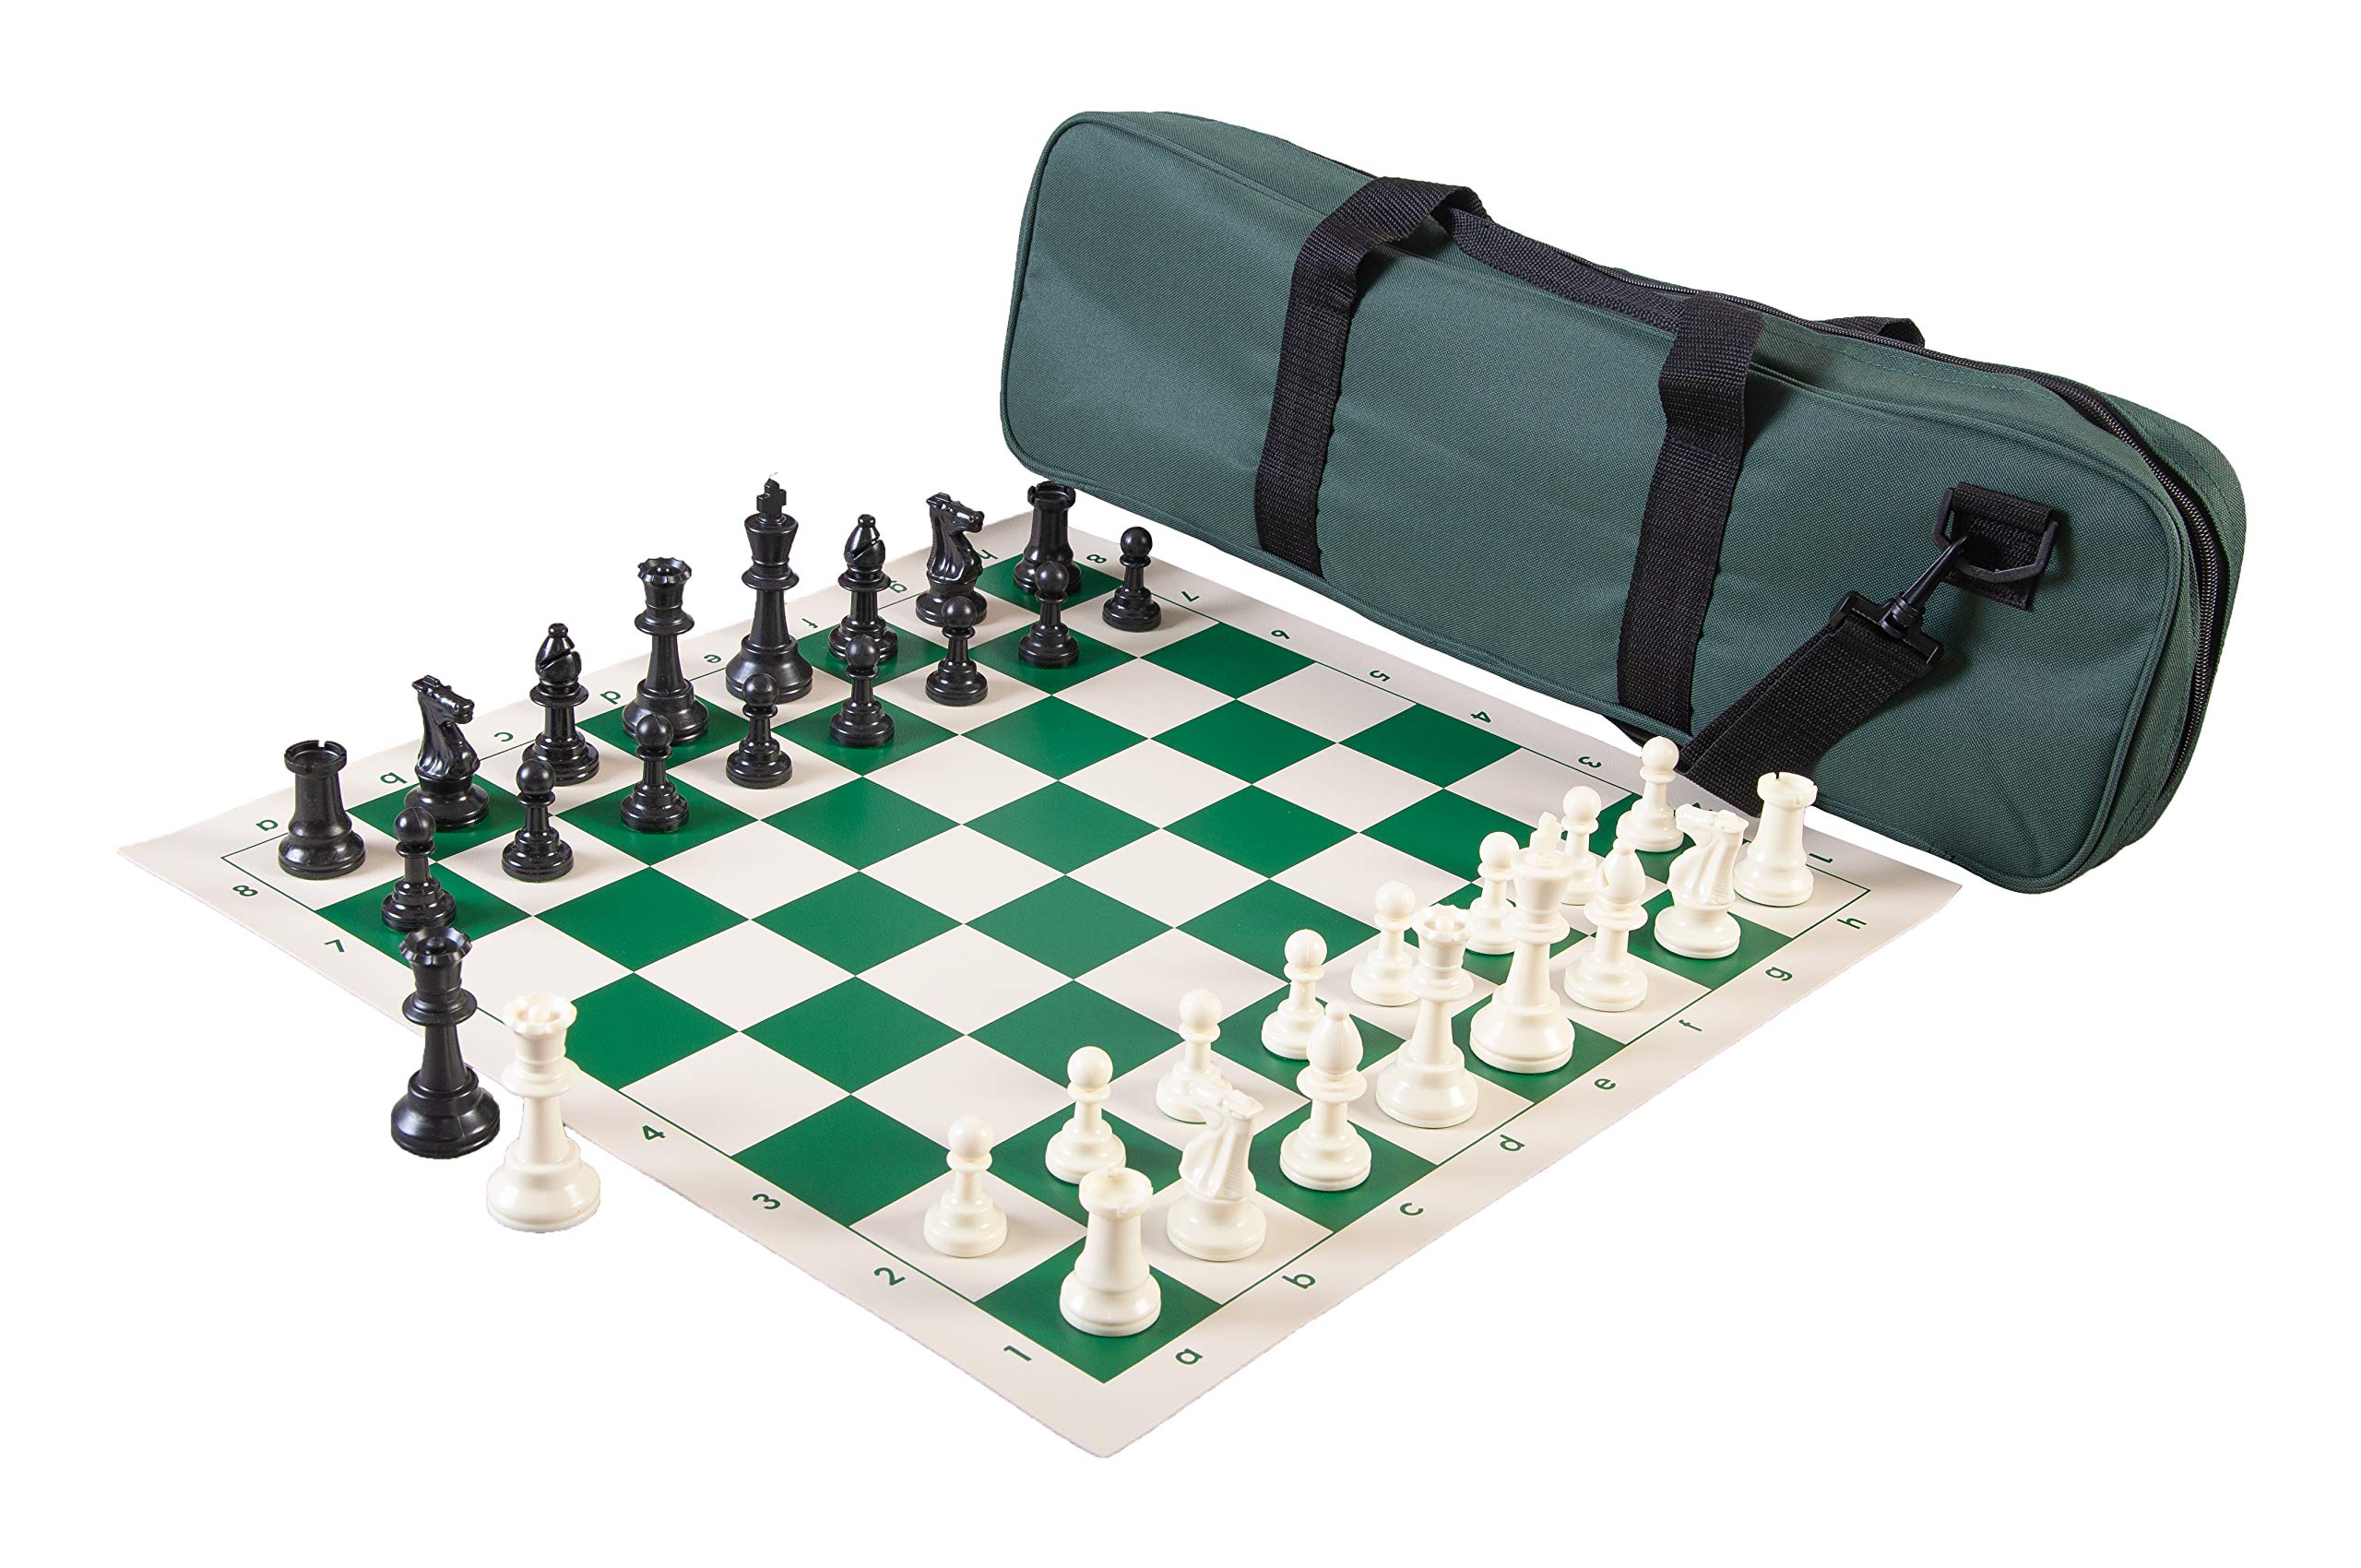 ※重さ:　約1.5 kg ※パッケージサイズ:　約61 x 20 x 8 cm ※輸入品です。 ※説明は英語表記になります。 ※海外からの配送の為、納期に遅延が発生する場合がございます。 *Heavy Tournament Triple Weighted Chess Set Combo - Forest Green